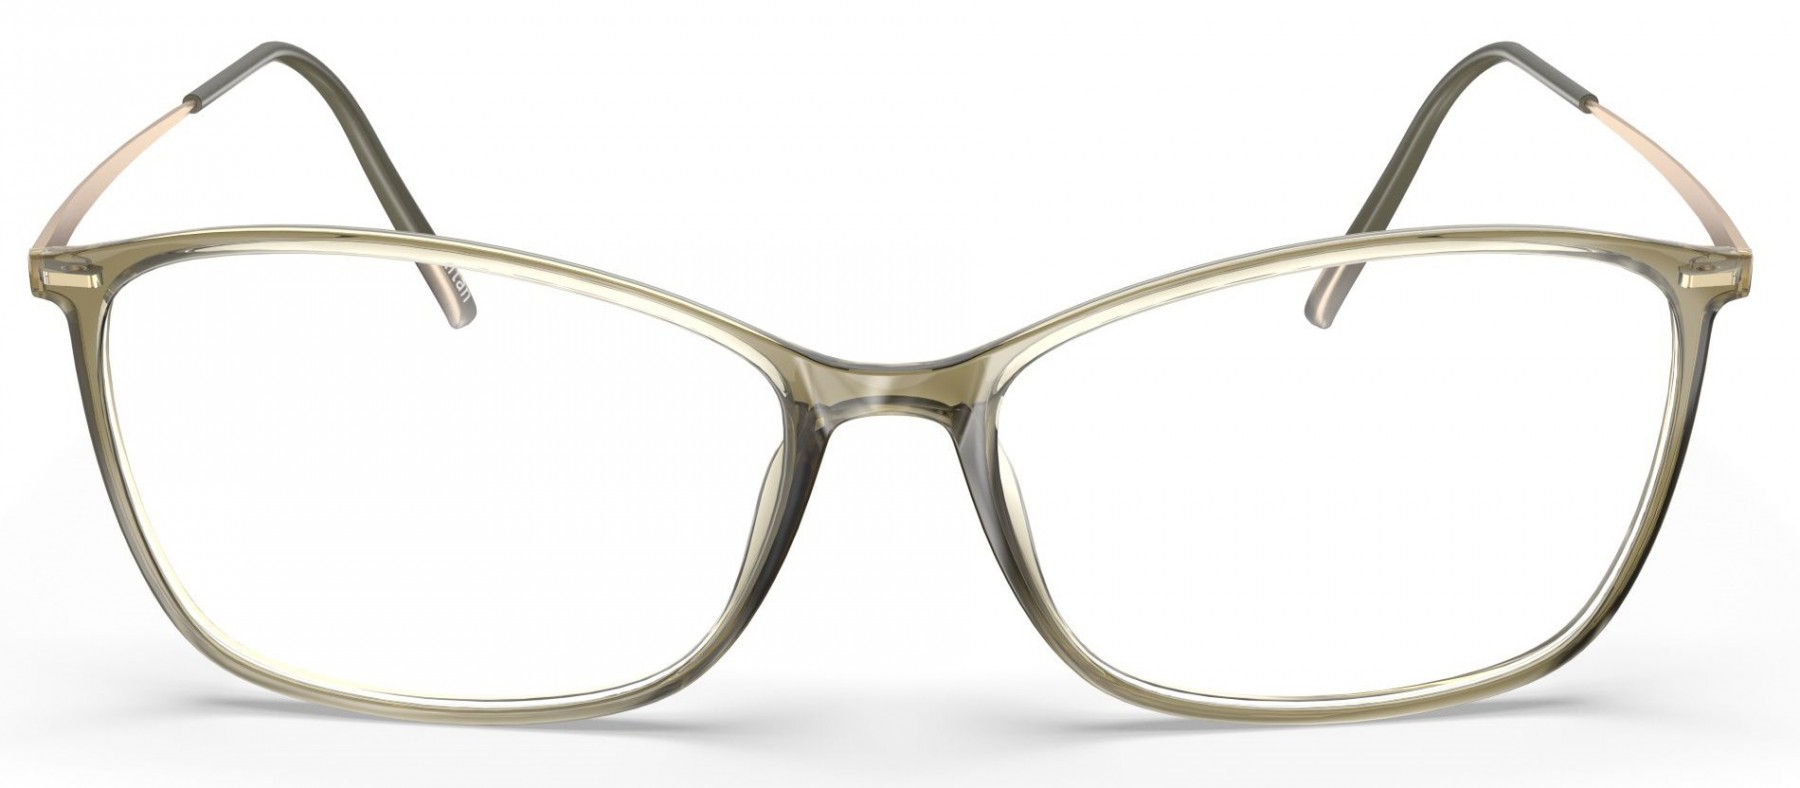 Silhouette 1598 5540 - Oculos de Grau